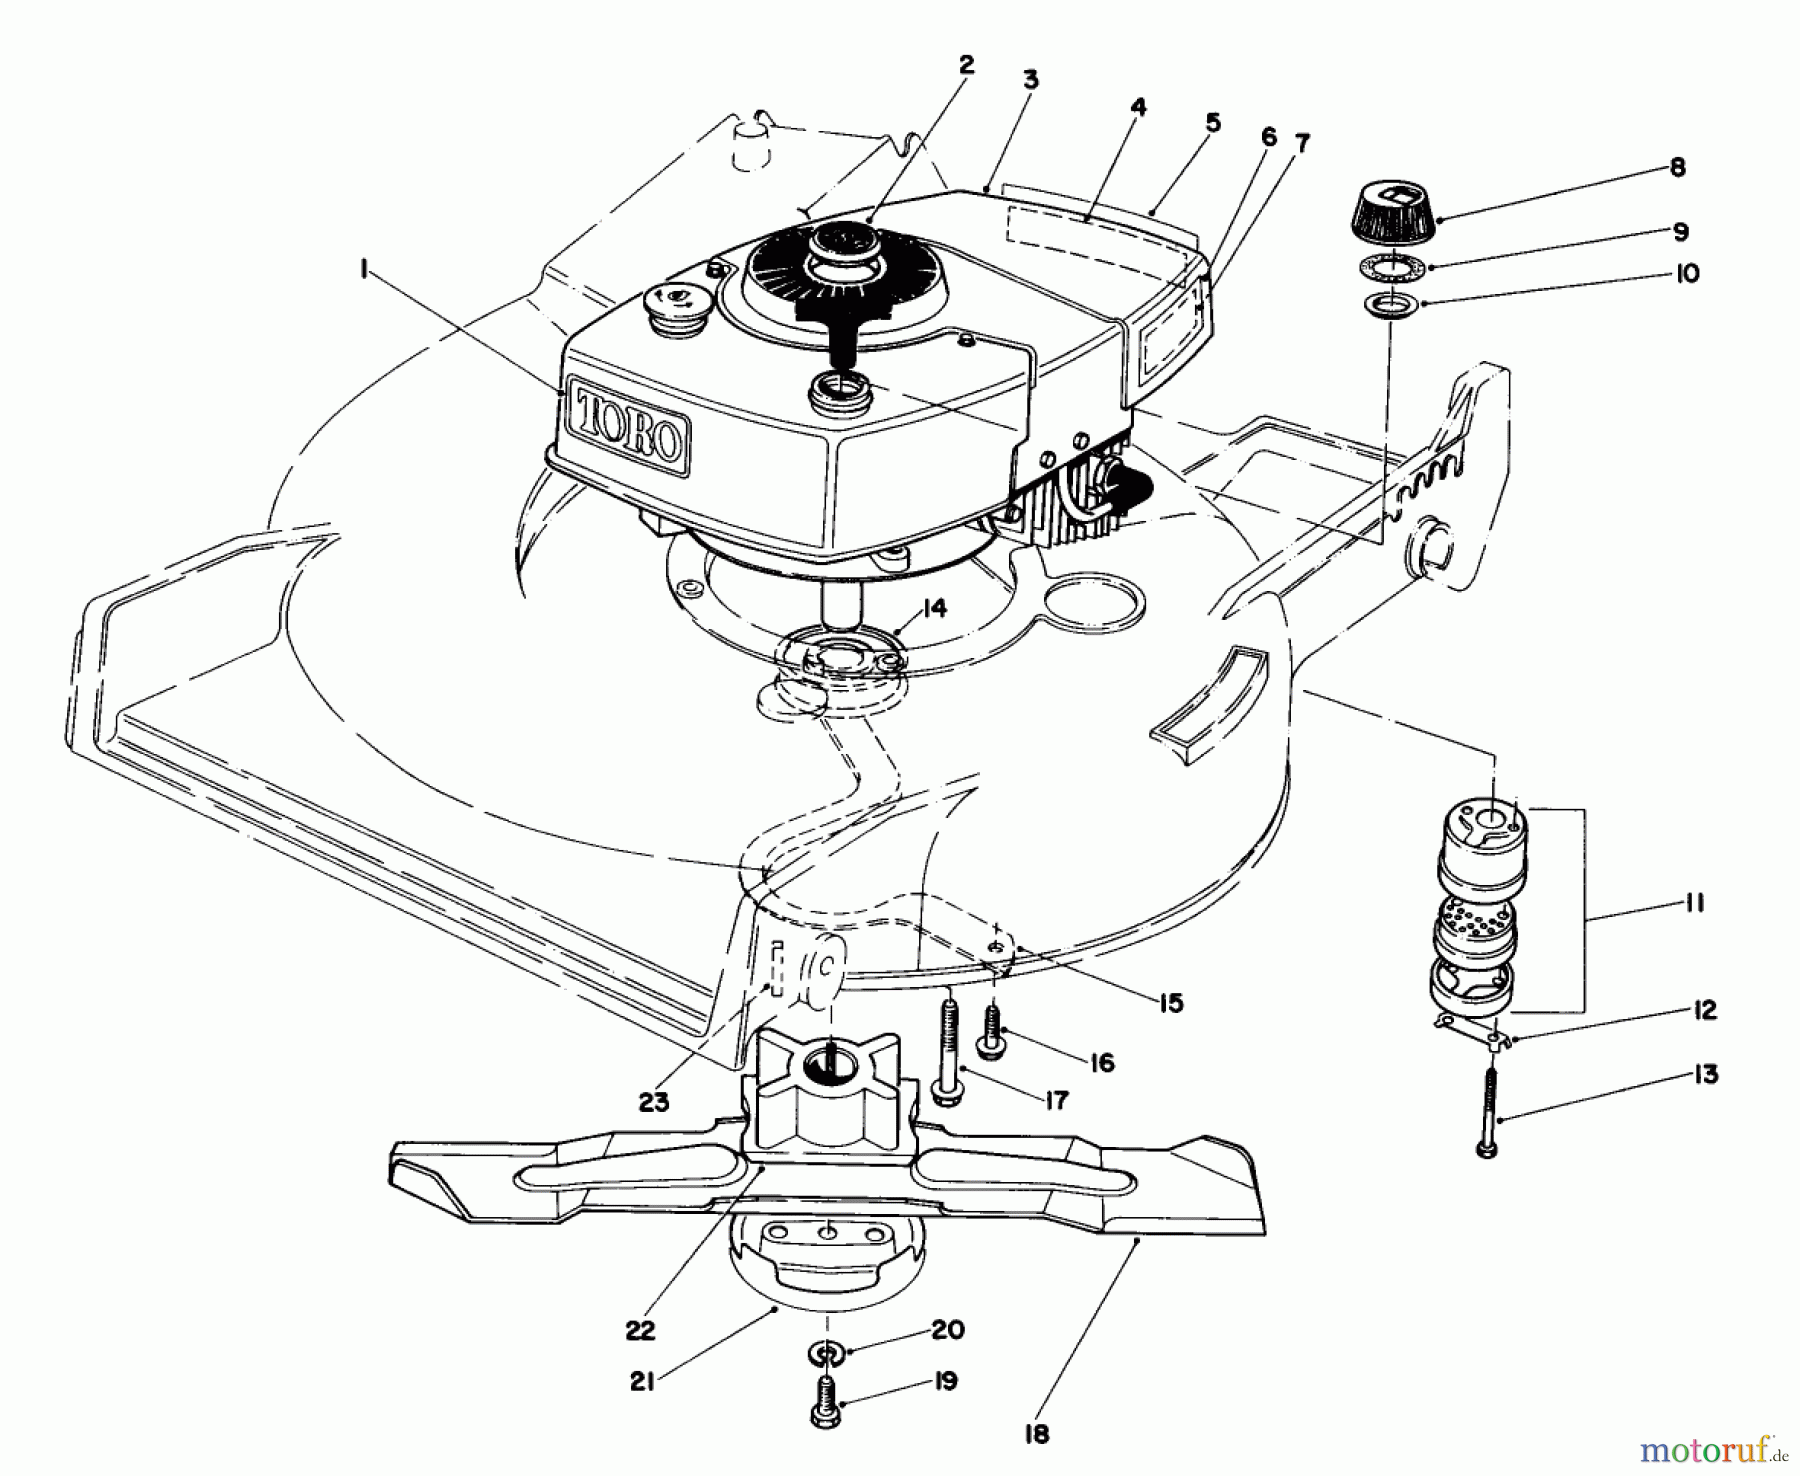  Toro Neu Mowers, Walk-Behind Seite 1 20705 - Toro Lawnmower, 1983 (3000001-3999999) ENGINE ASSEMBLY